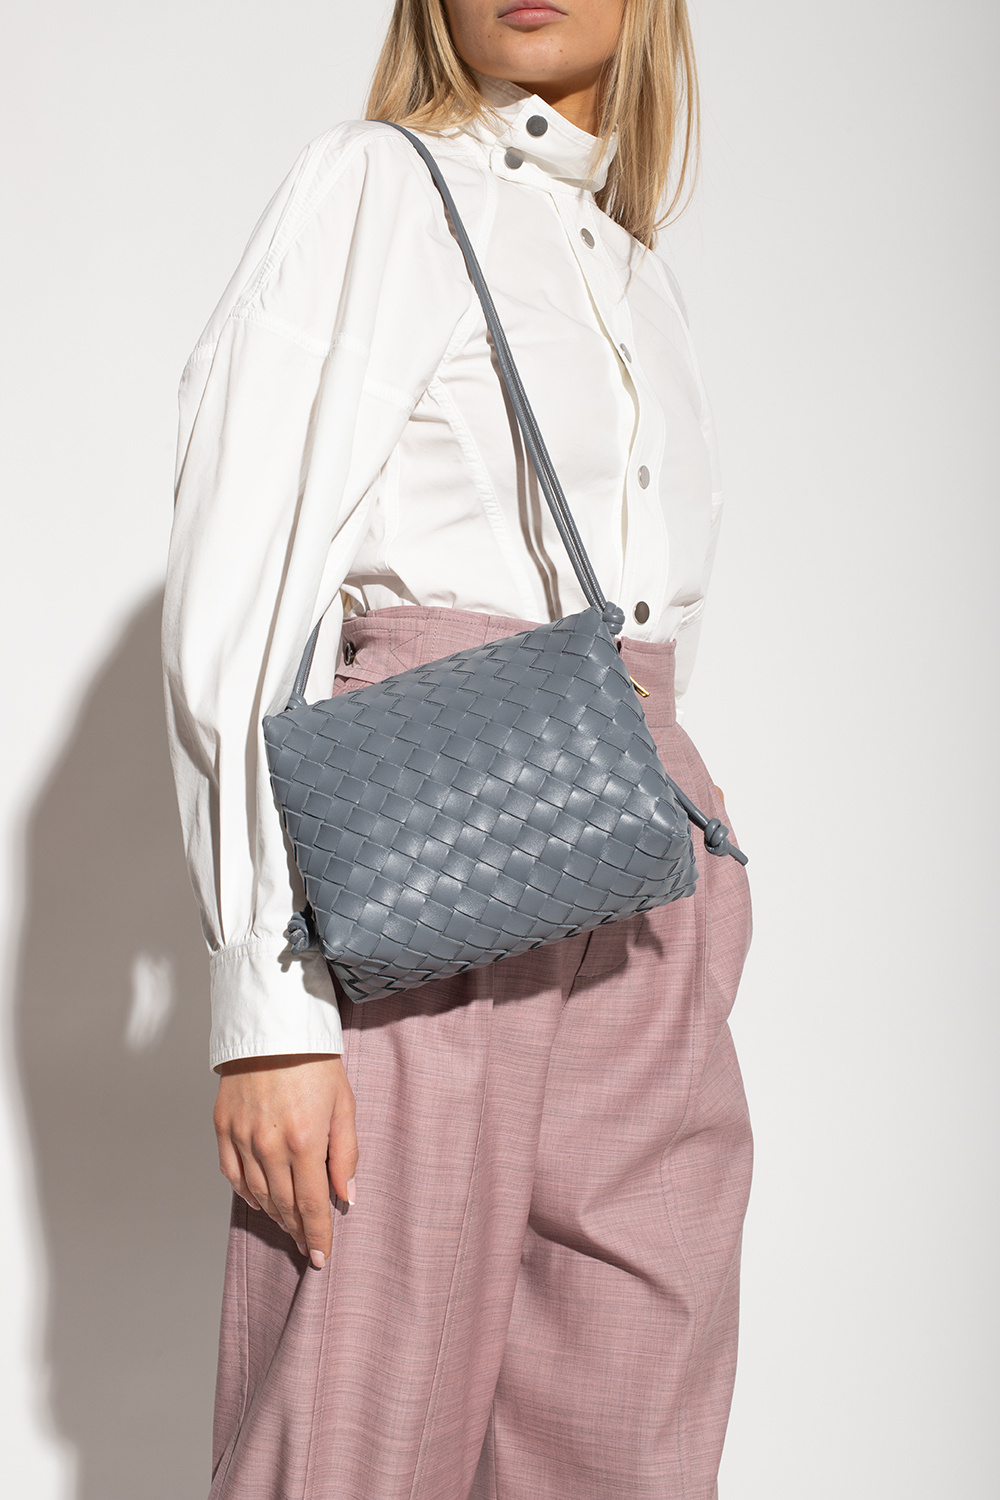 Bottega Veneta 'Loop Small' shoulder bag, Women's Bags